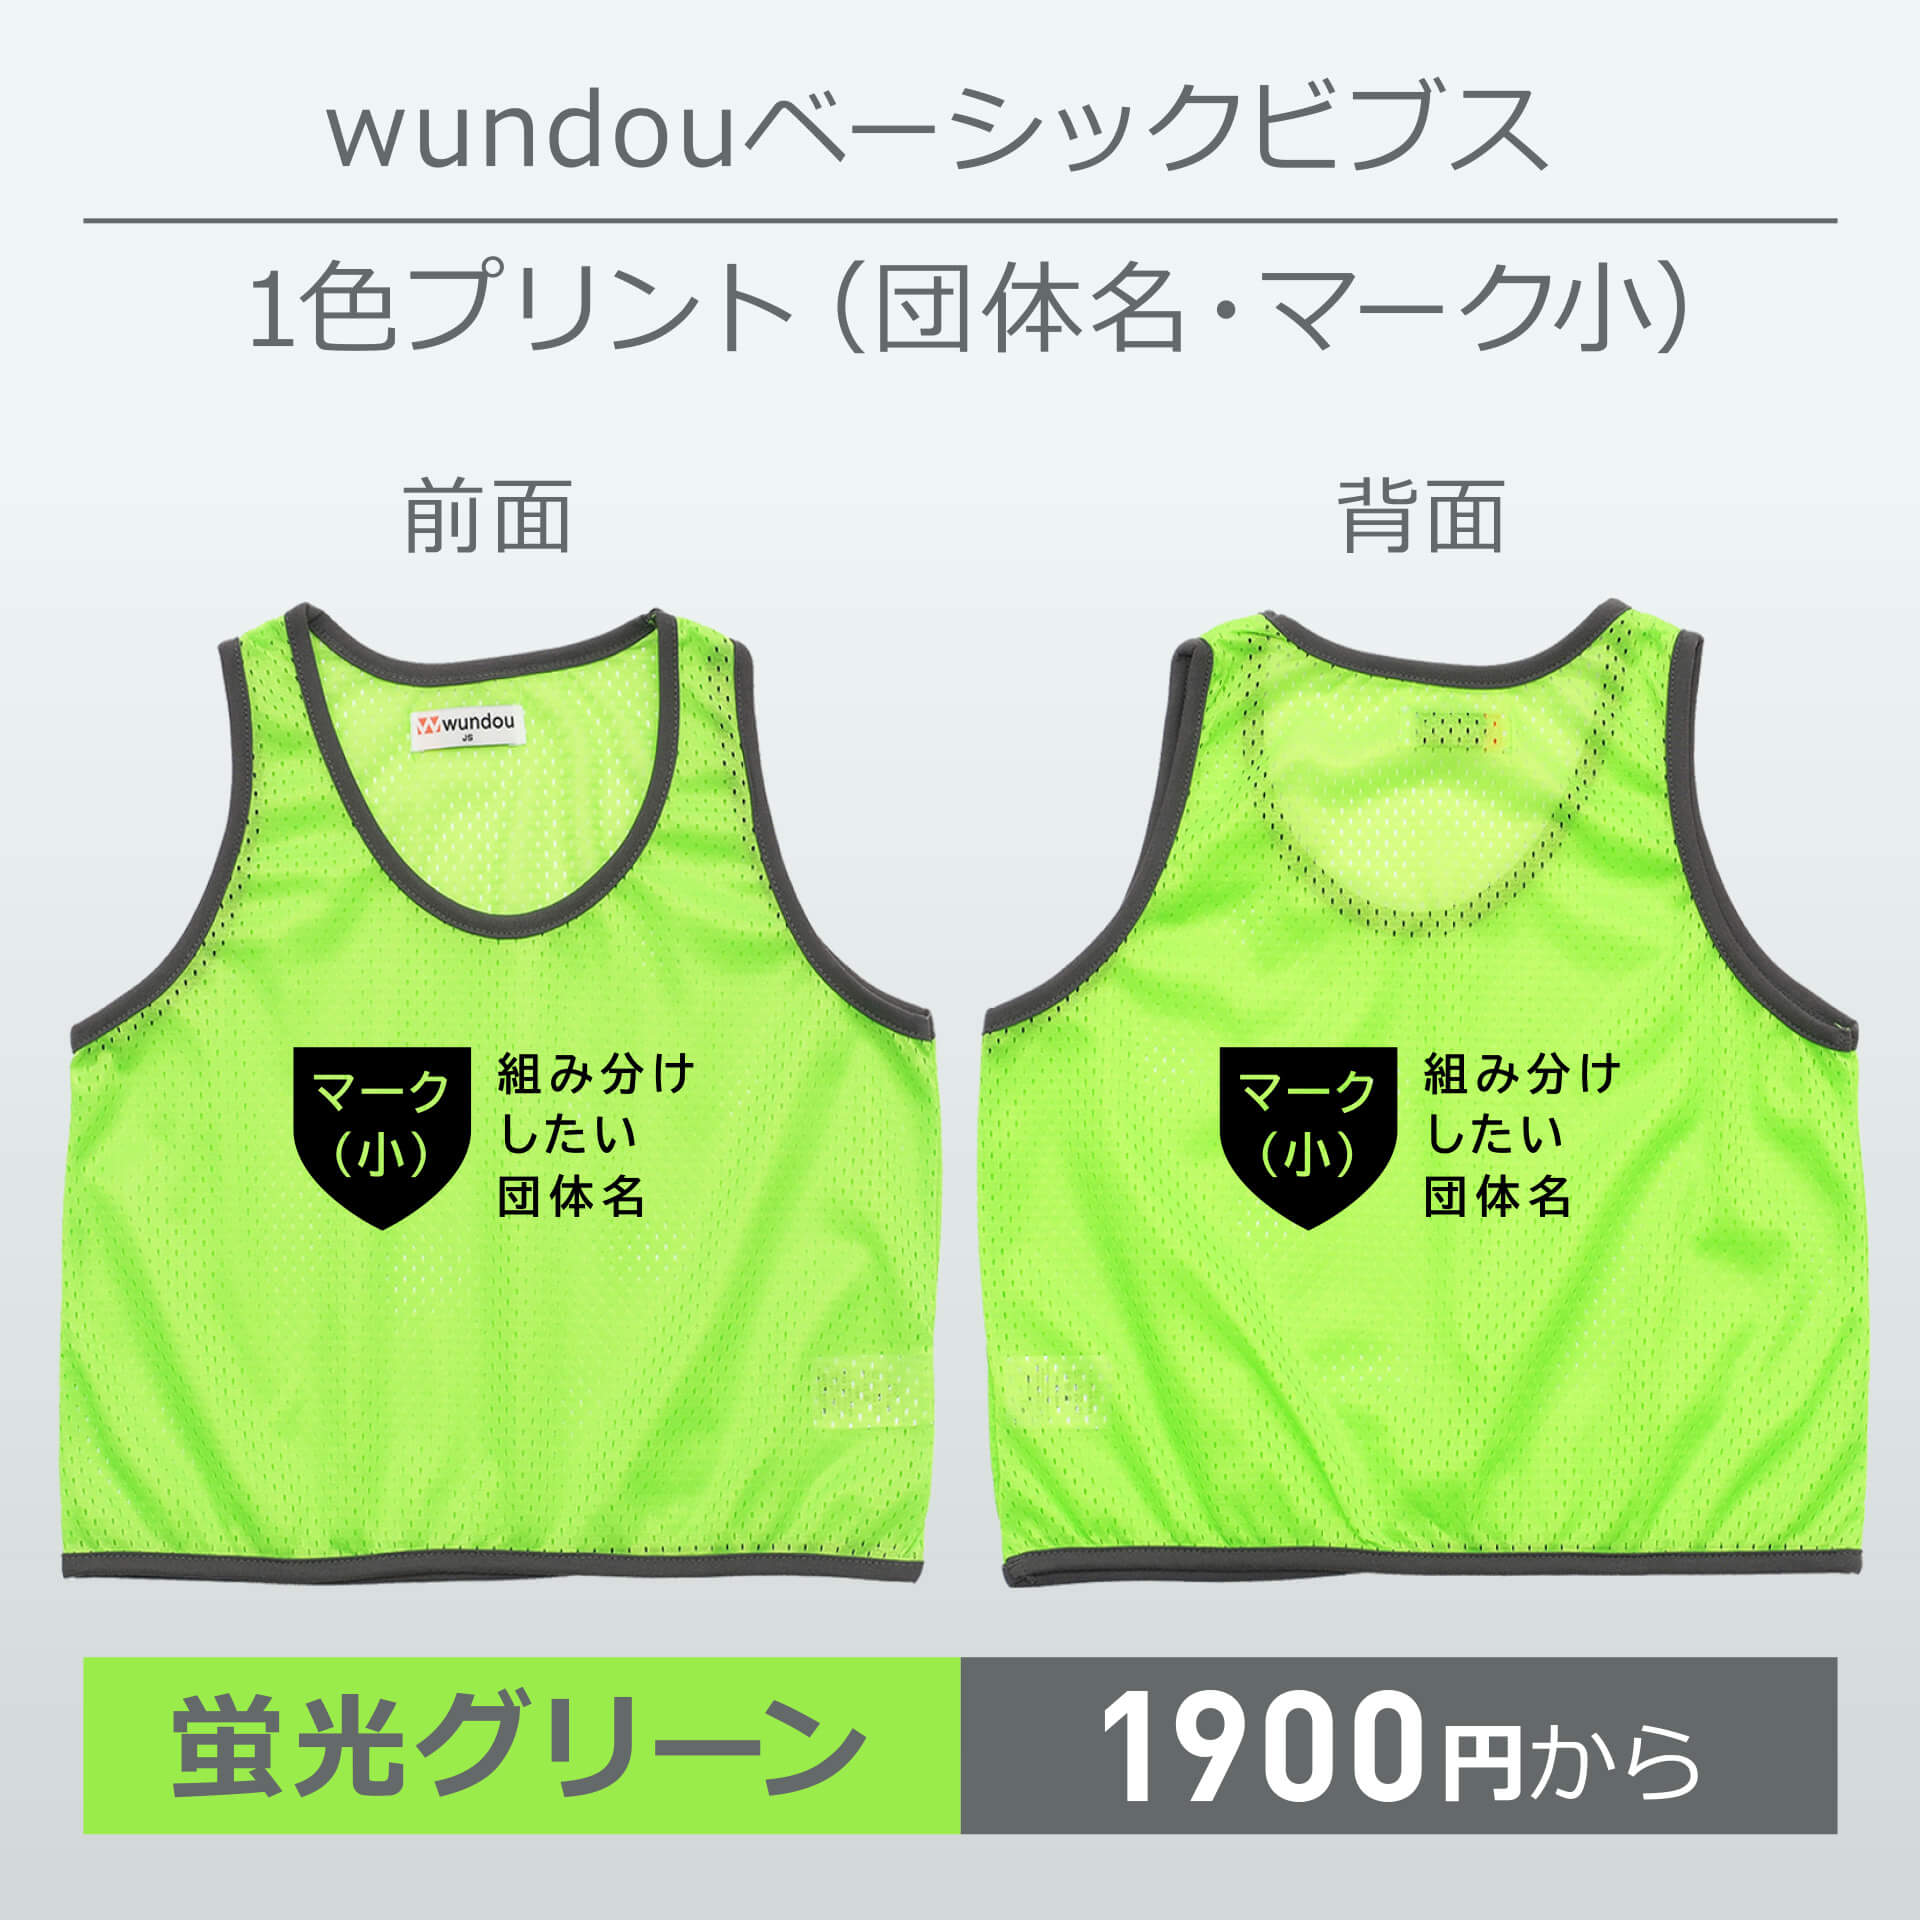 wundou・ベーシックビブス・1色プリント(団体名・マーク小)・蛍光グリーン